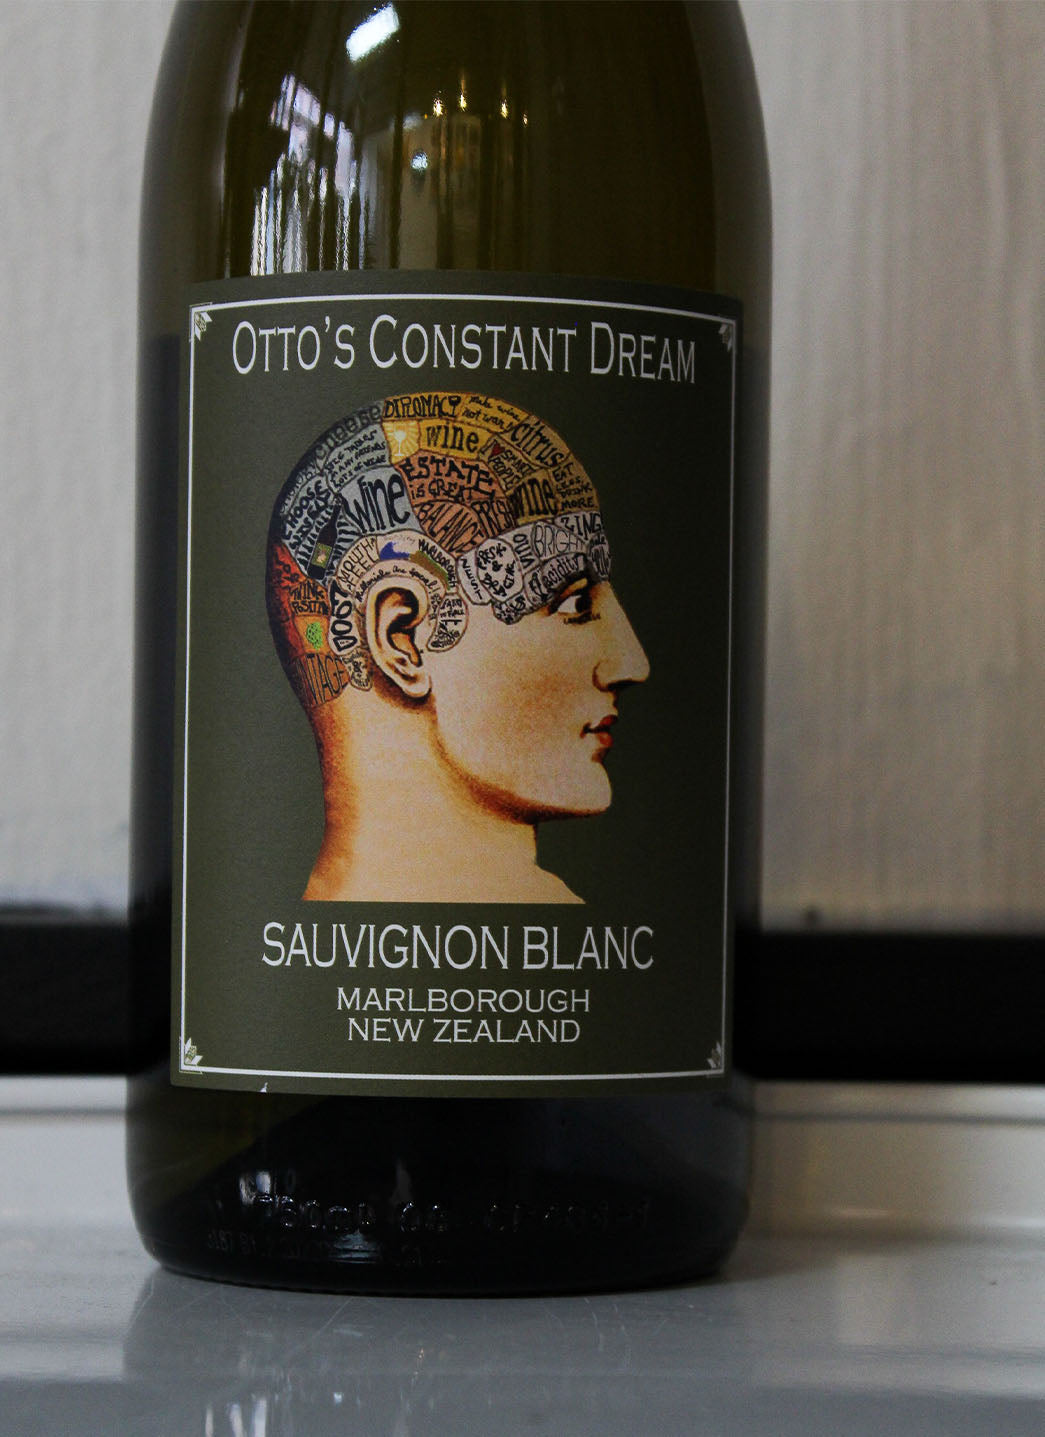 Otto's Constant Dream Sauvignon Blanc